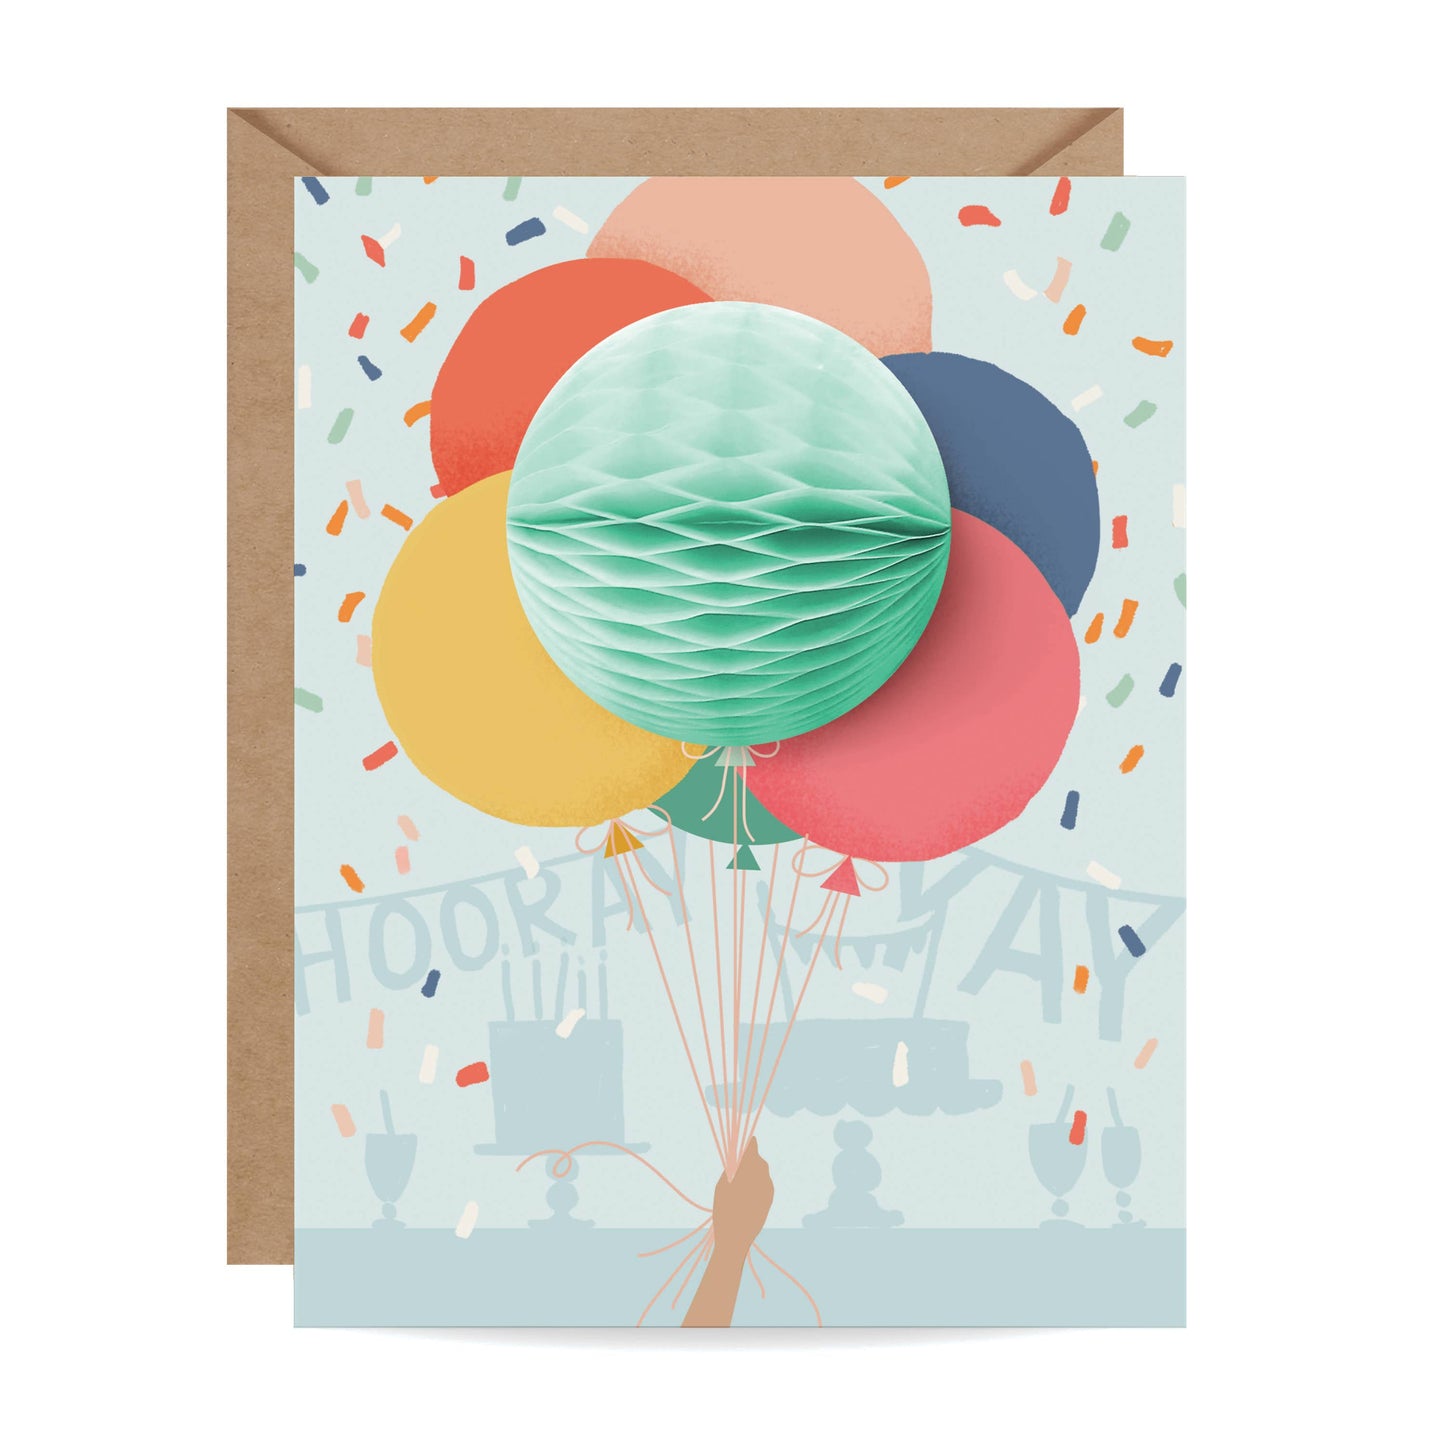 Balloon Bunch Pop-up Card